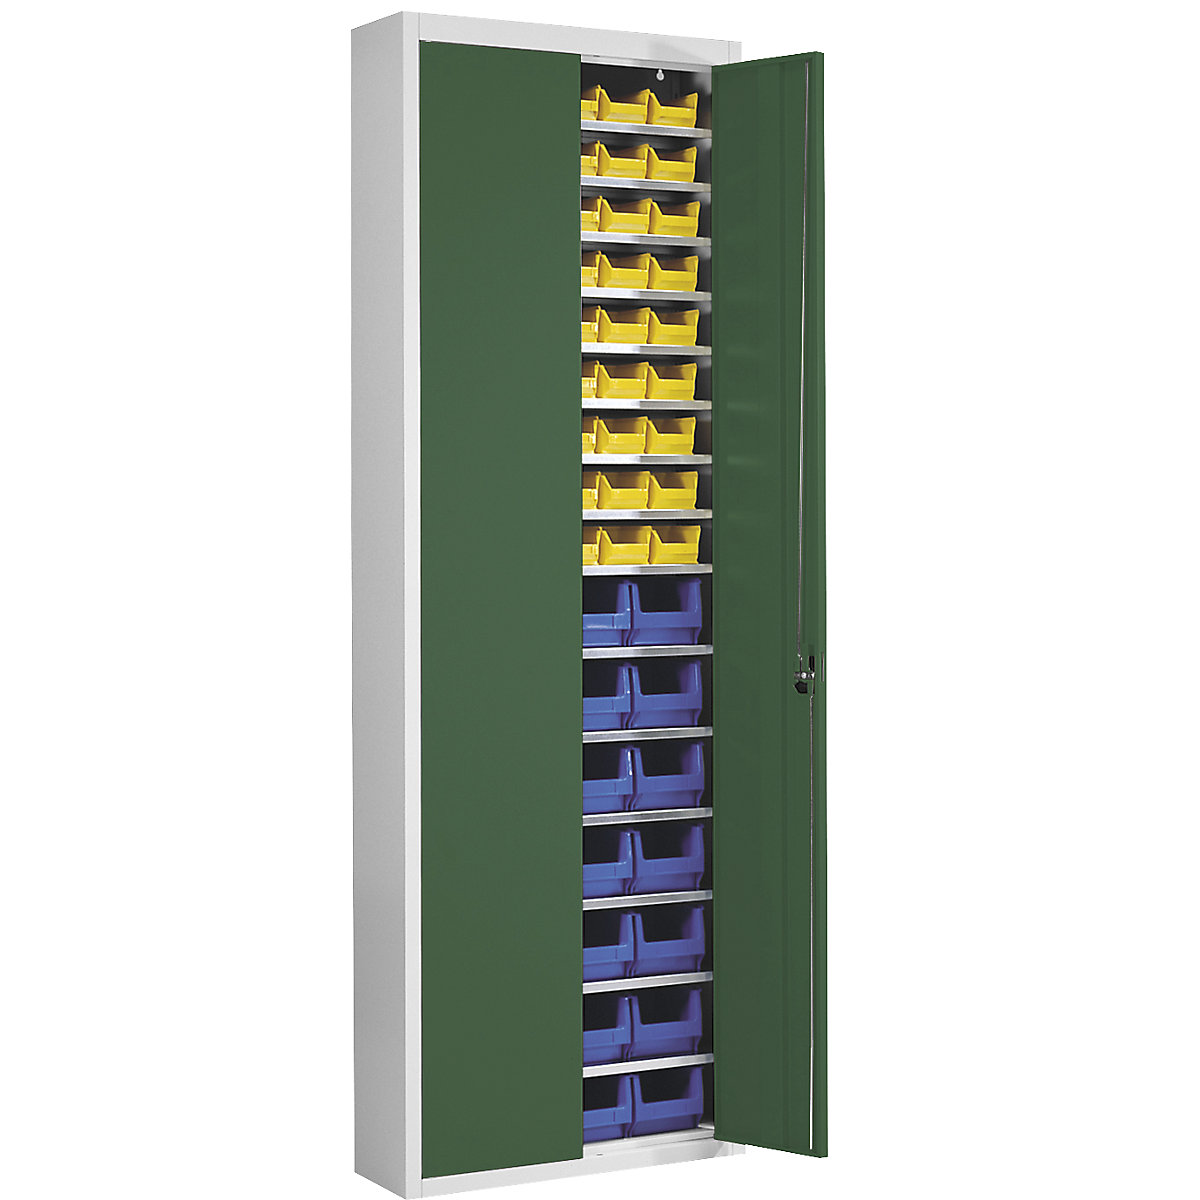 Armário de armazém com caixas de armazenagem à vista – mauser, AxLxP 2150 x 680 x 280 mm, duas cores, corpo em cinzento, portas em verde, 82 caixas-7